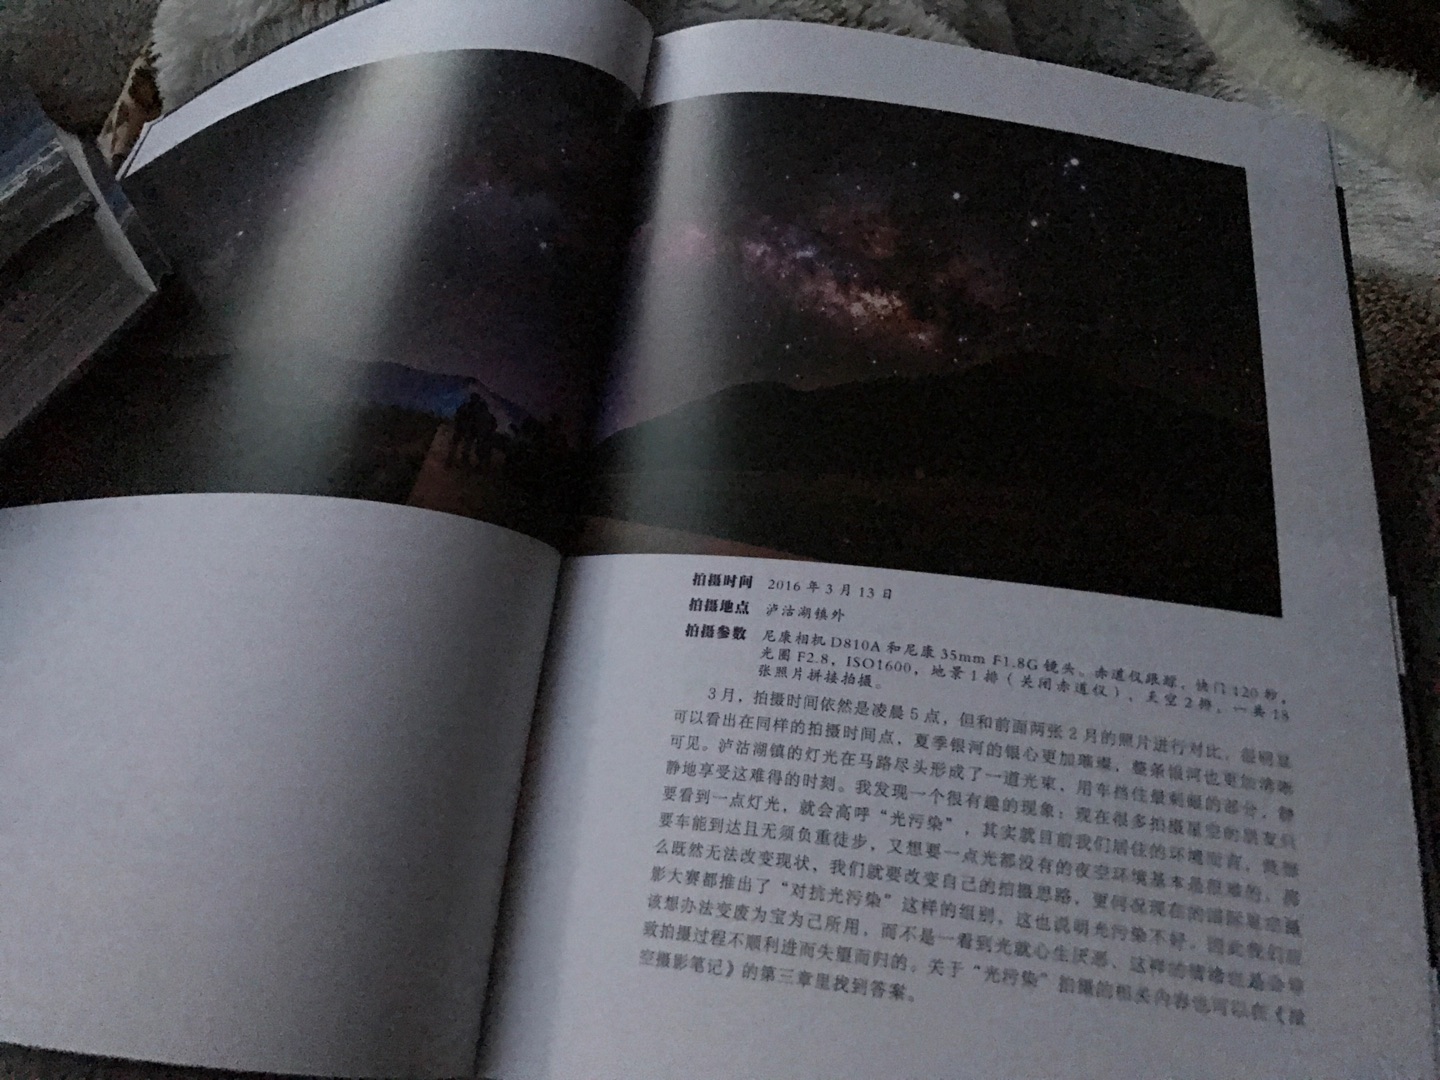 自从在加斯珀国家公园看到银河后，瞬间爱上星空摄影，经常来回两百公里去南汇嘴拍星空。原来上海也能看到银河。希望能从这部书上学习更多的星空摄影知识。